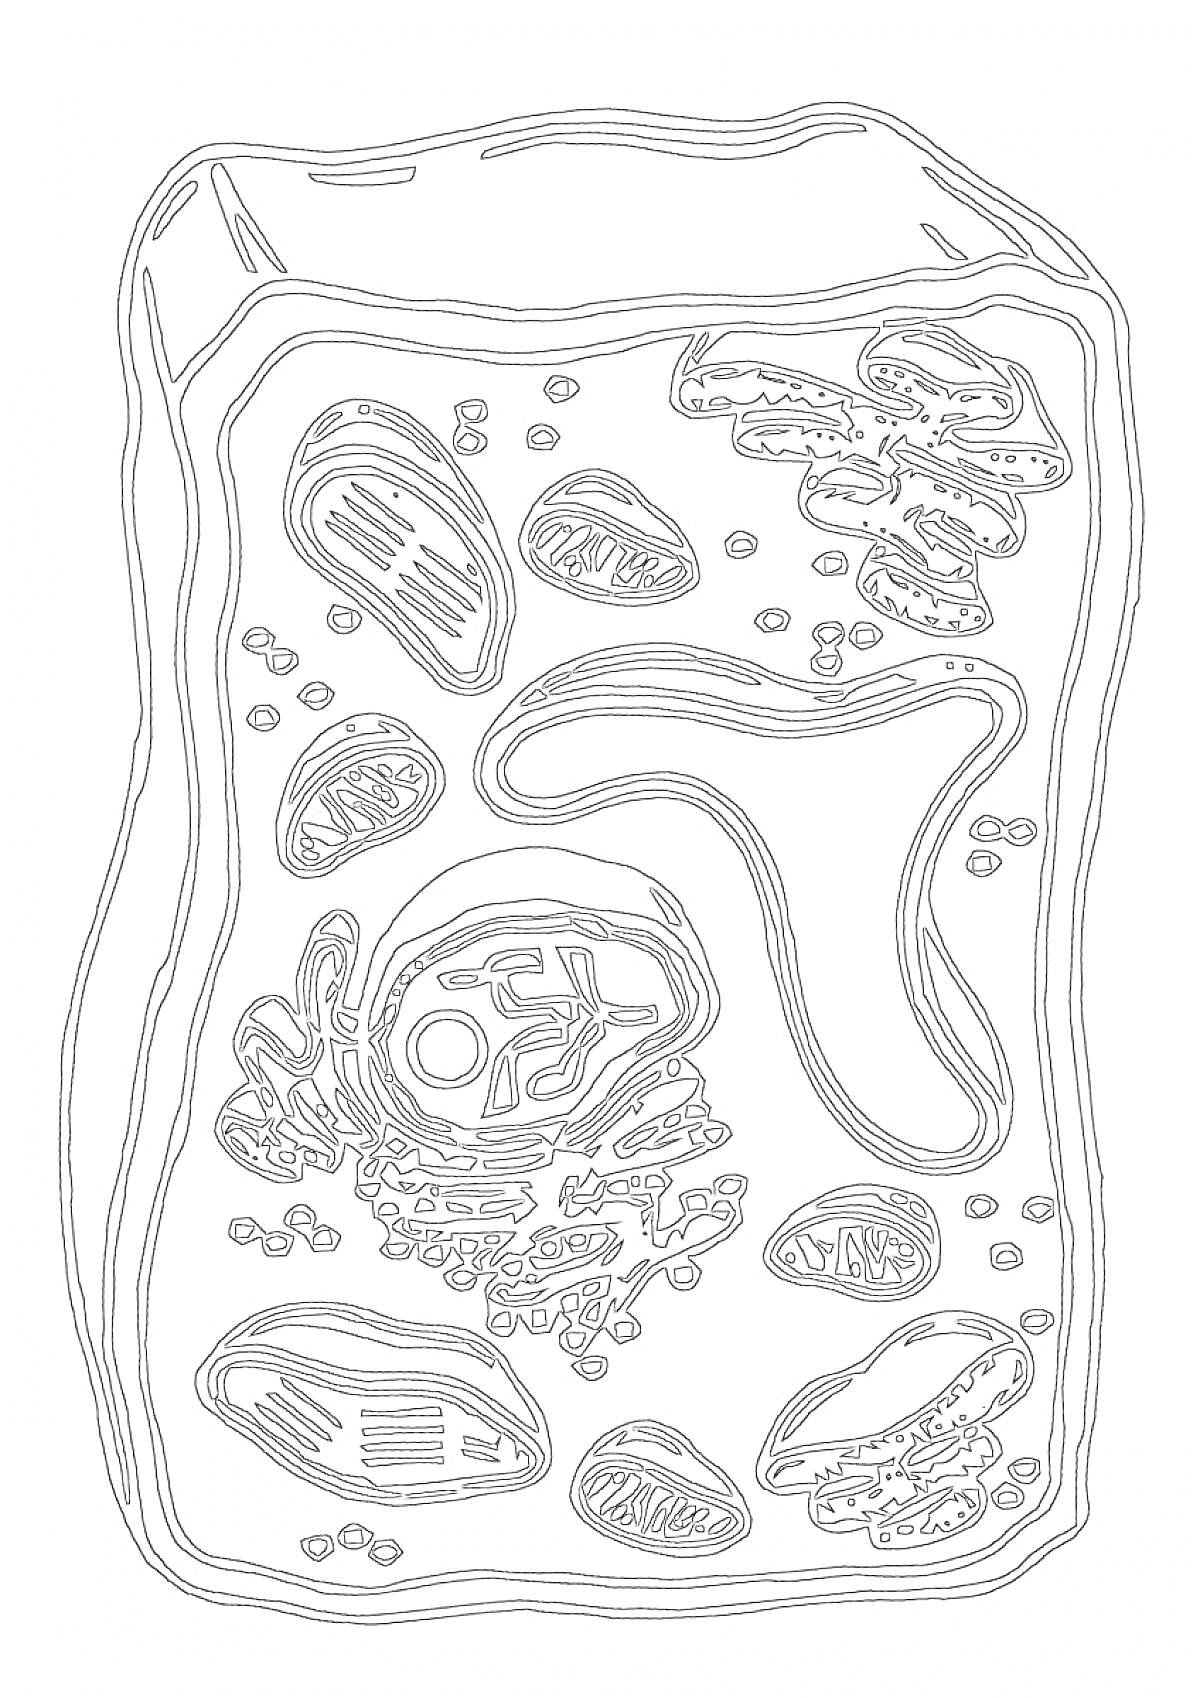 Раскраска Строение растительной клетки с органеллами (вакуоль, хлоропласты, ядро, митохондрии и другие)